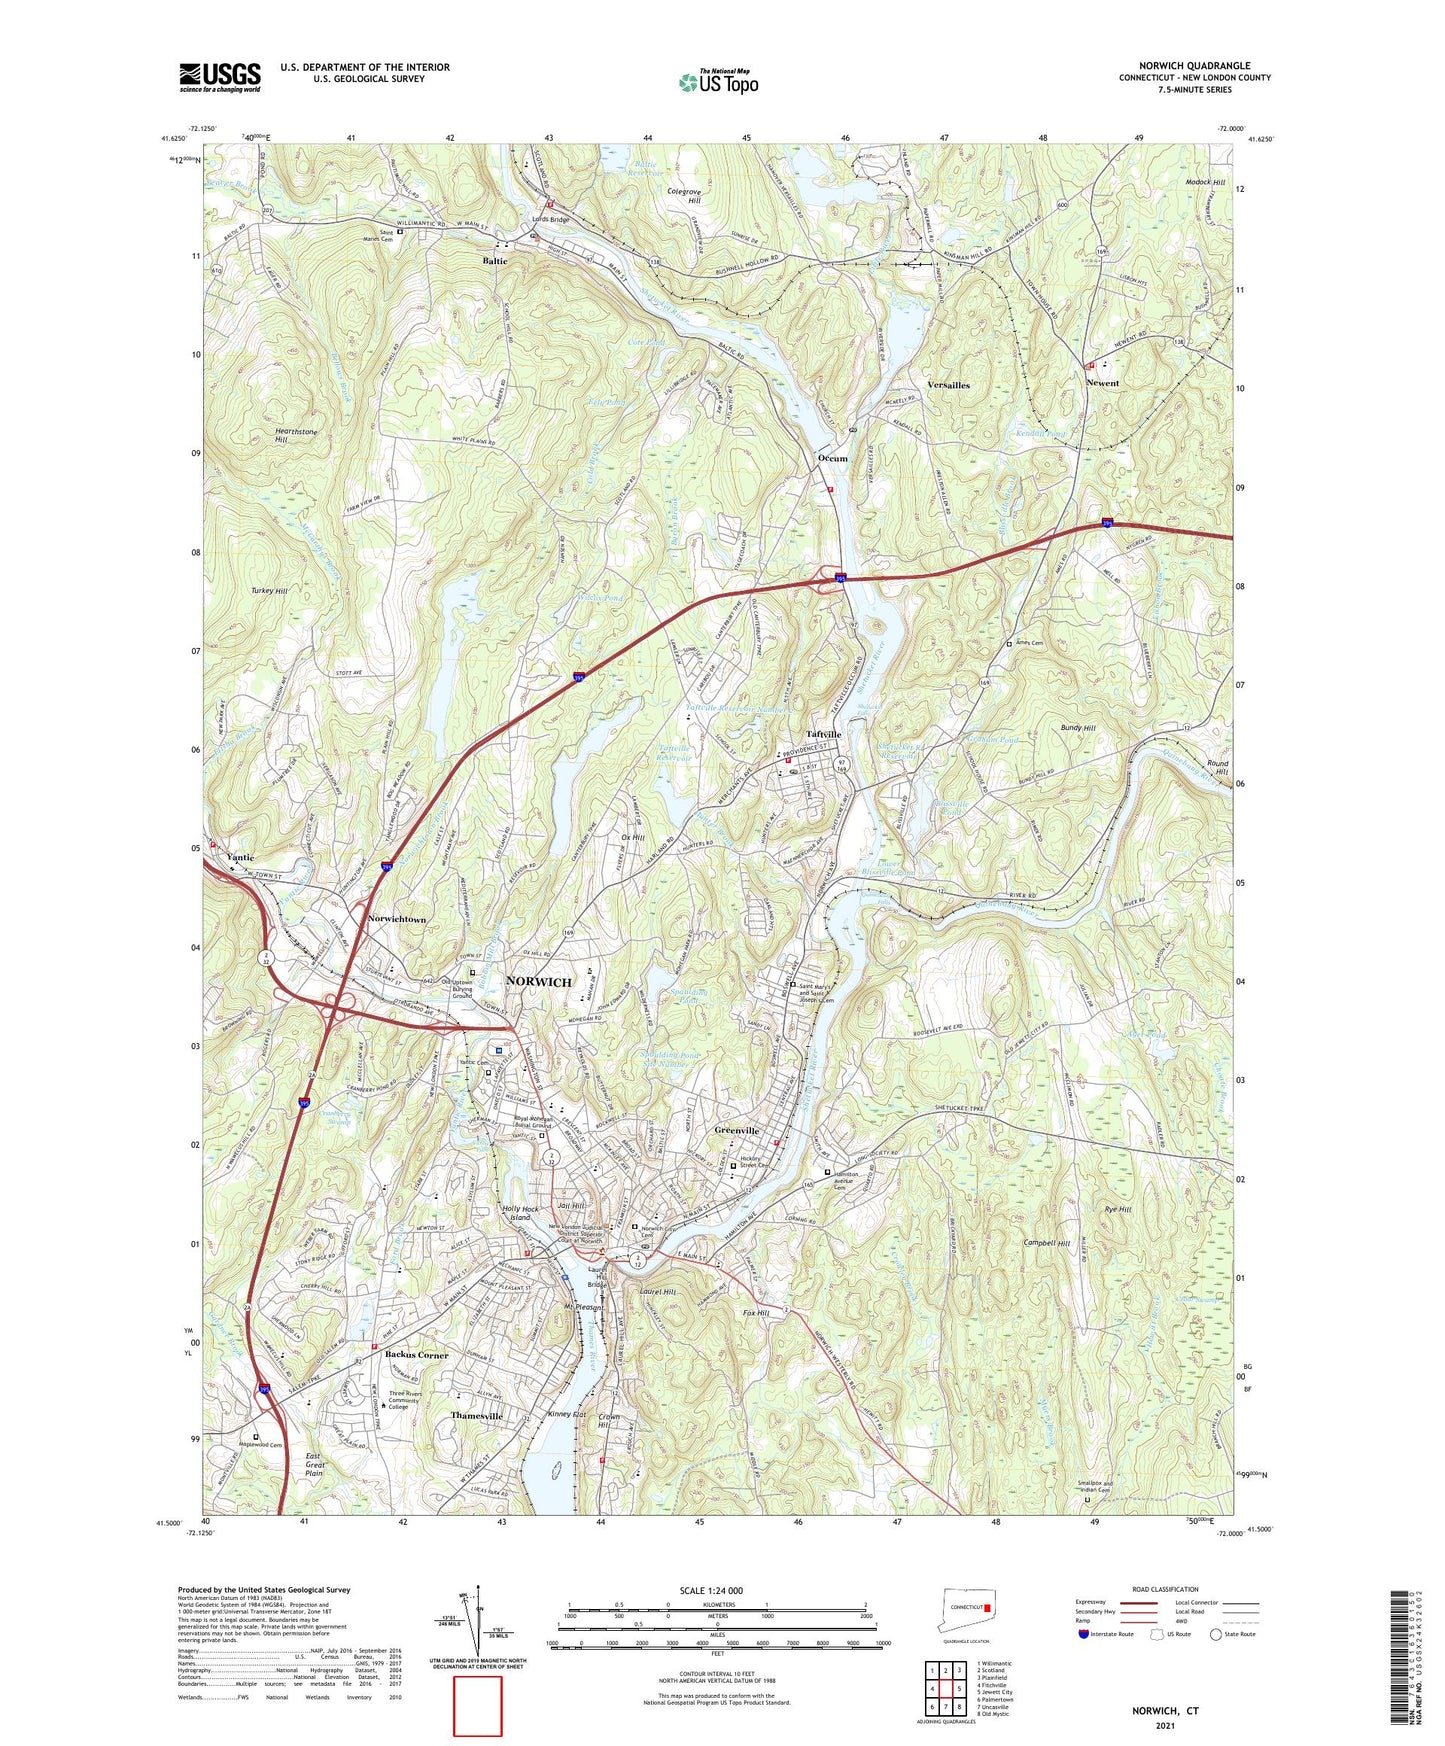 Norwich Connecticut US Topo Map Image